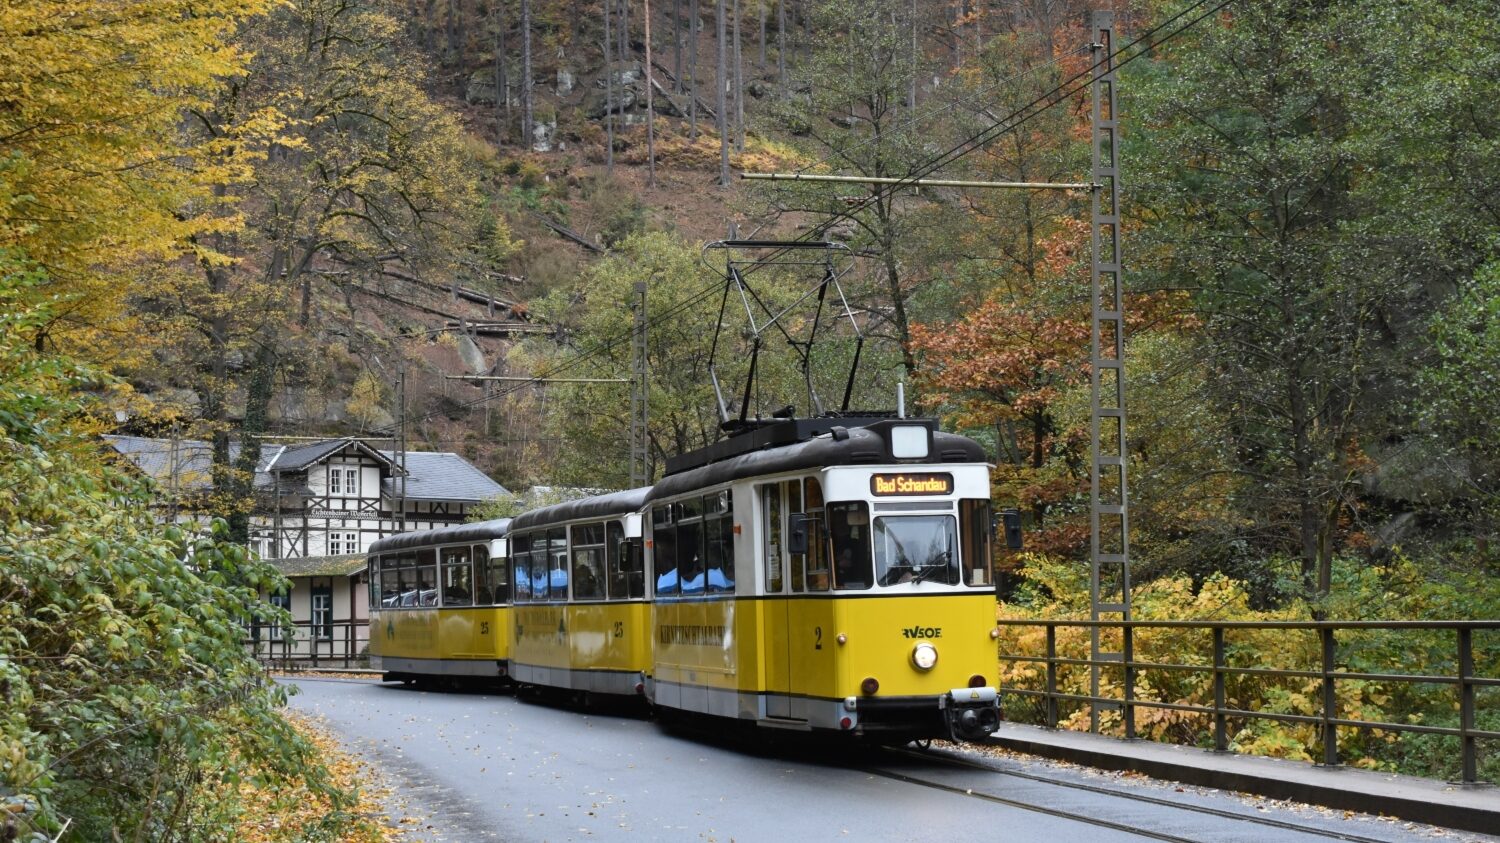 V současné době má tramvajová trať hlavně charakter turistické atrakce. Slouží na ní tramvaje z produkce vagónky Gotha. (foto: Libor Hinčica)